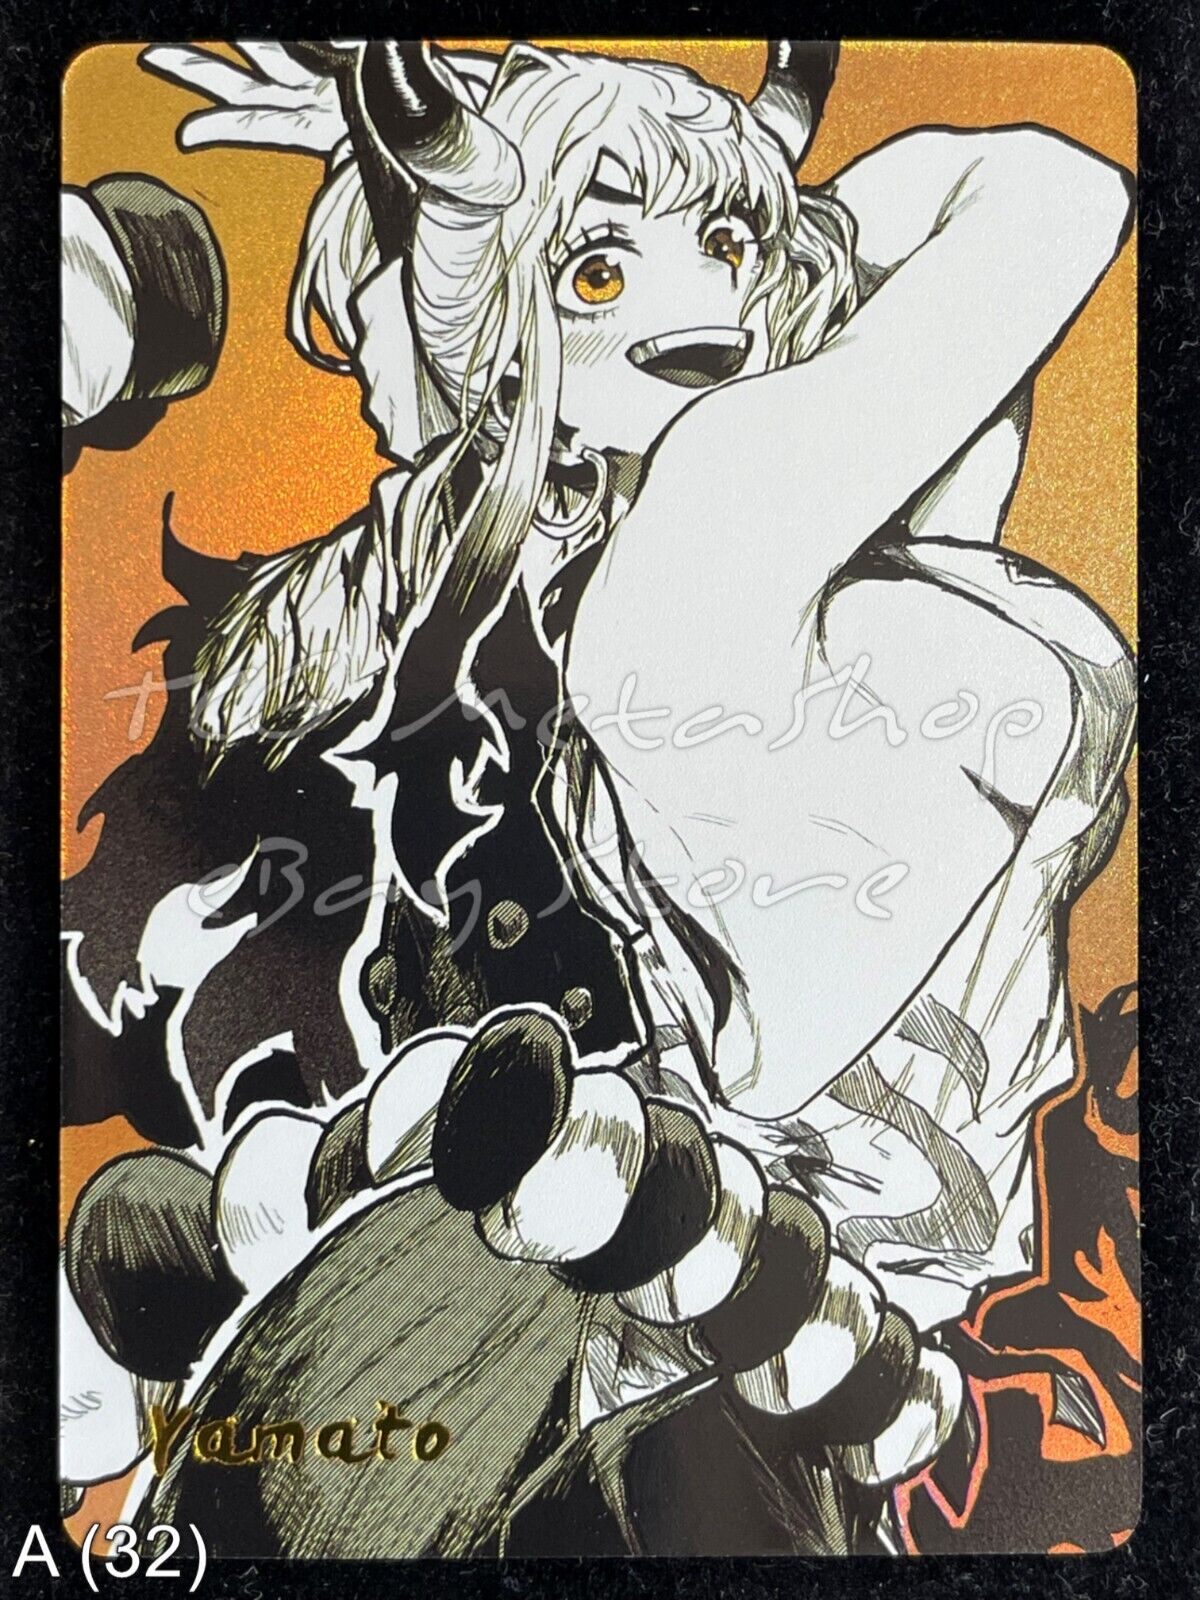 🔥 A 32 Yamato One Piece Goddess Story Anime Waifu Card ACG 🔥